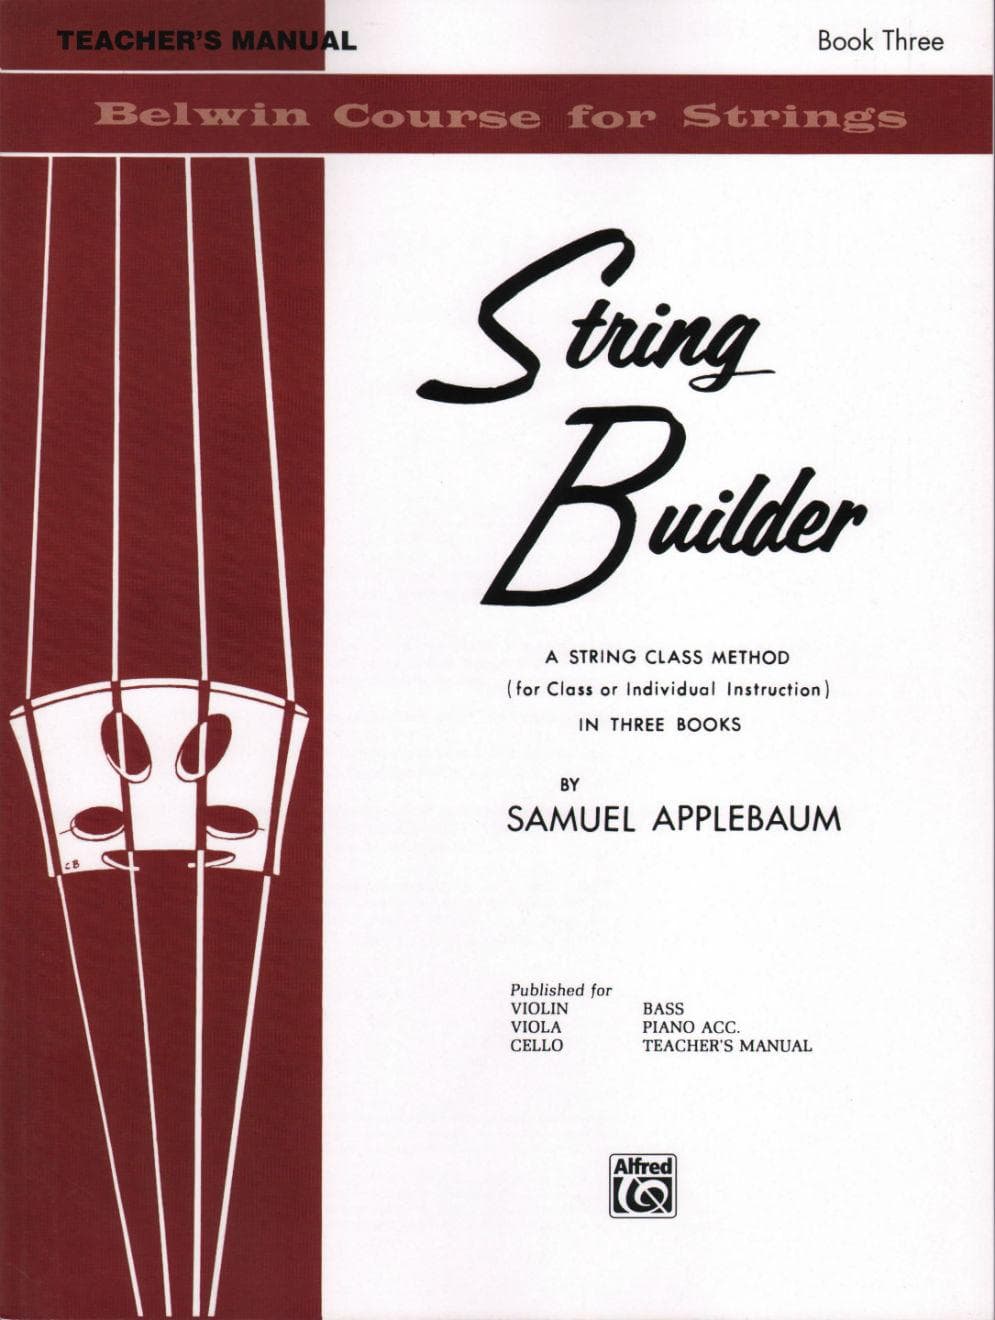 Applebaum, Samuel - String Builder - Book 3 Teacher's Manuel - Belwin/Mills Publication